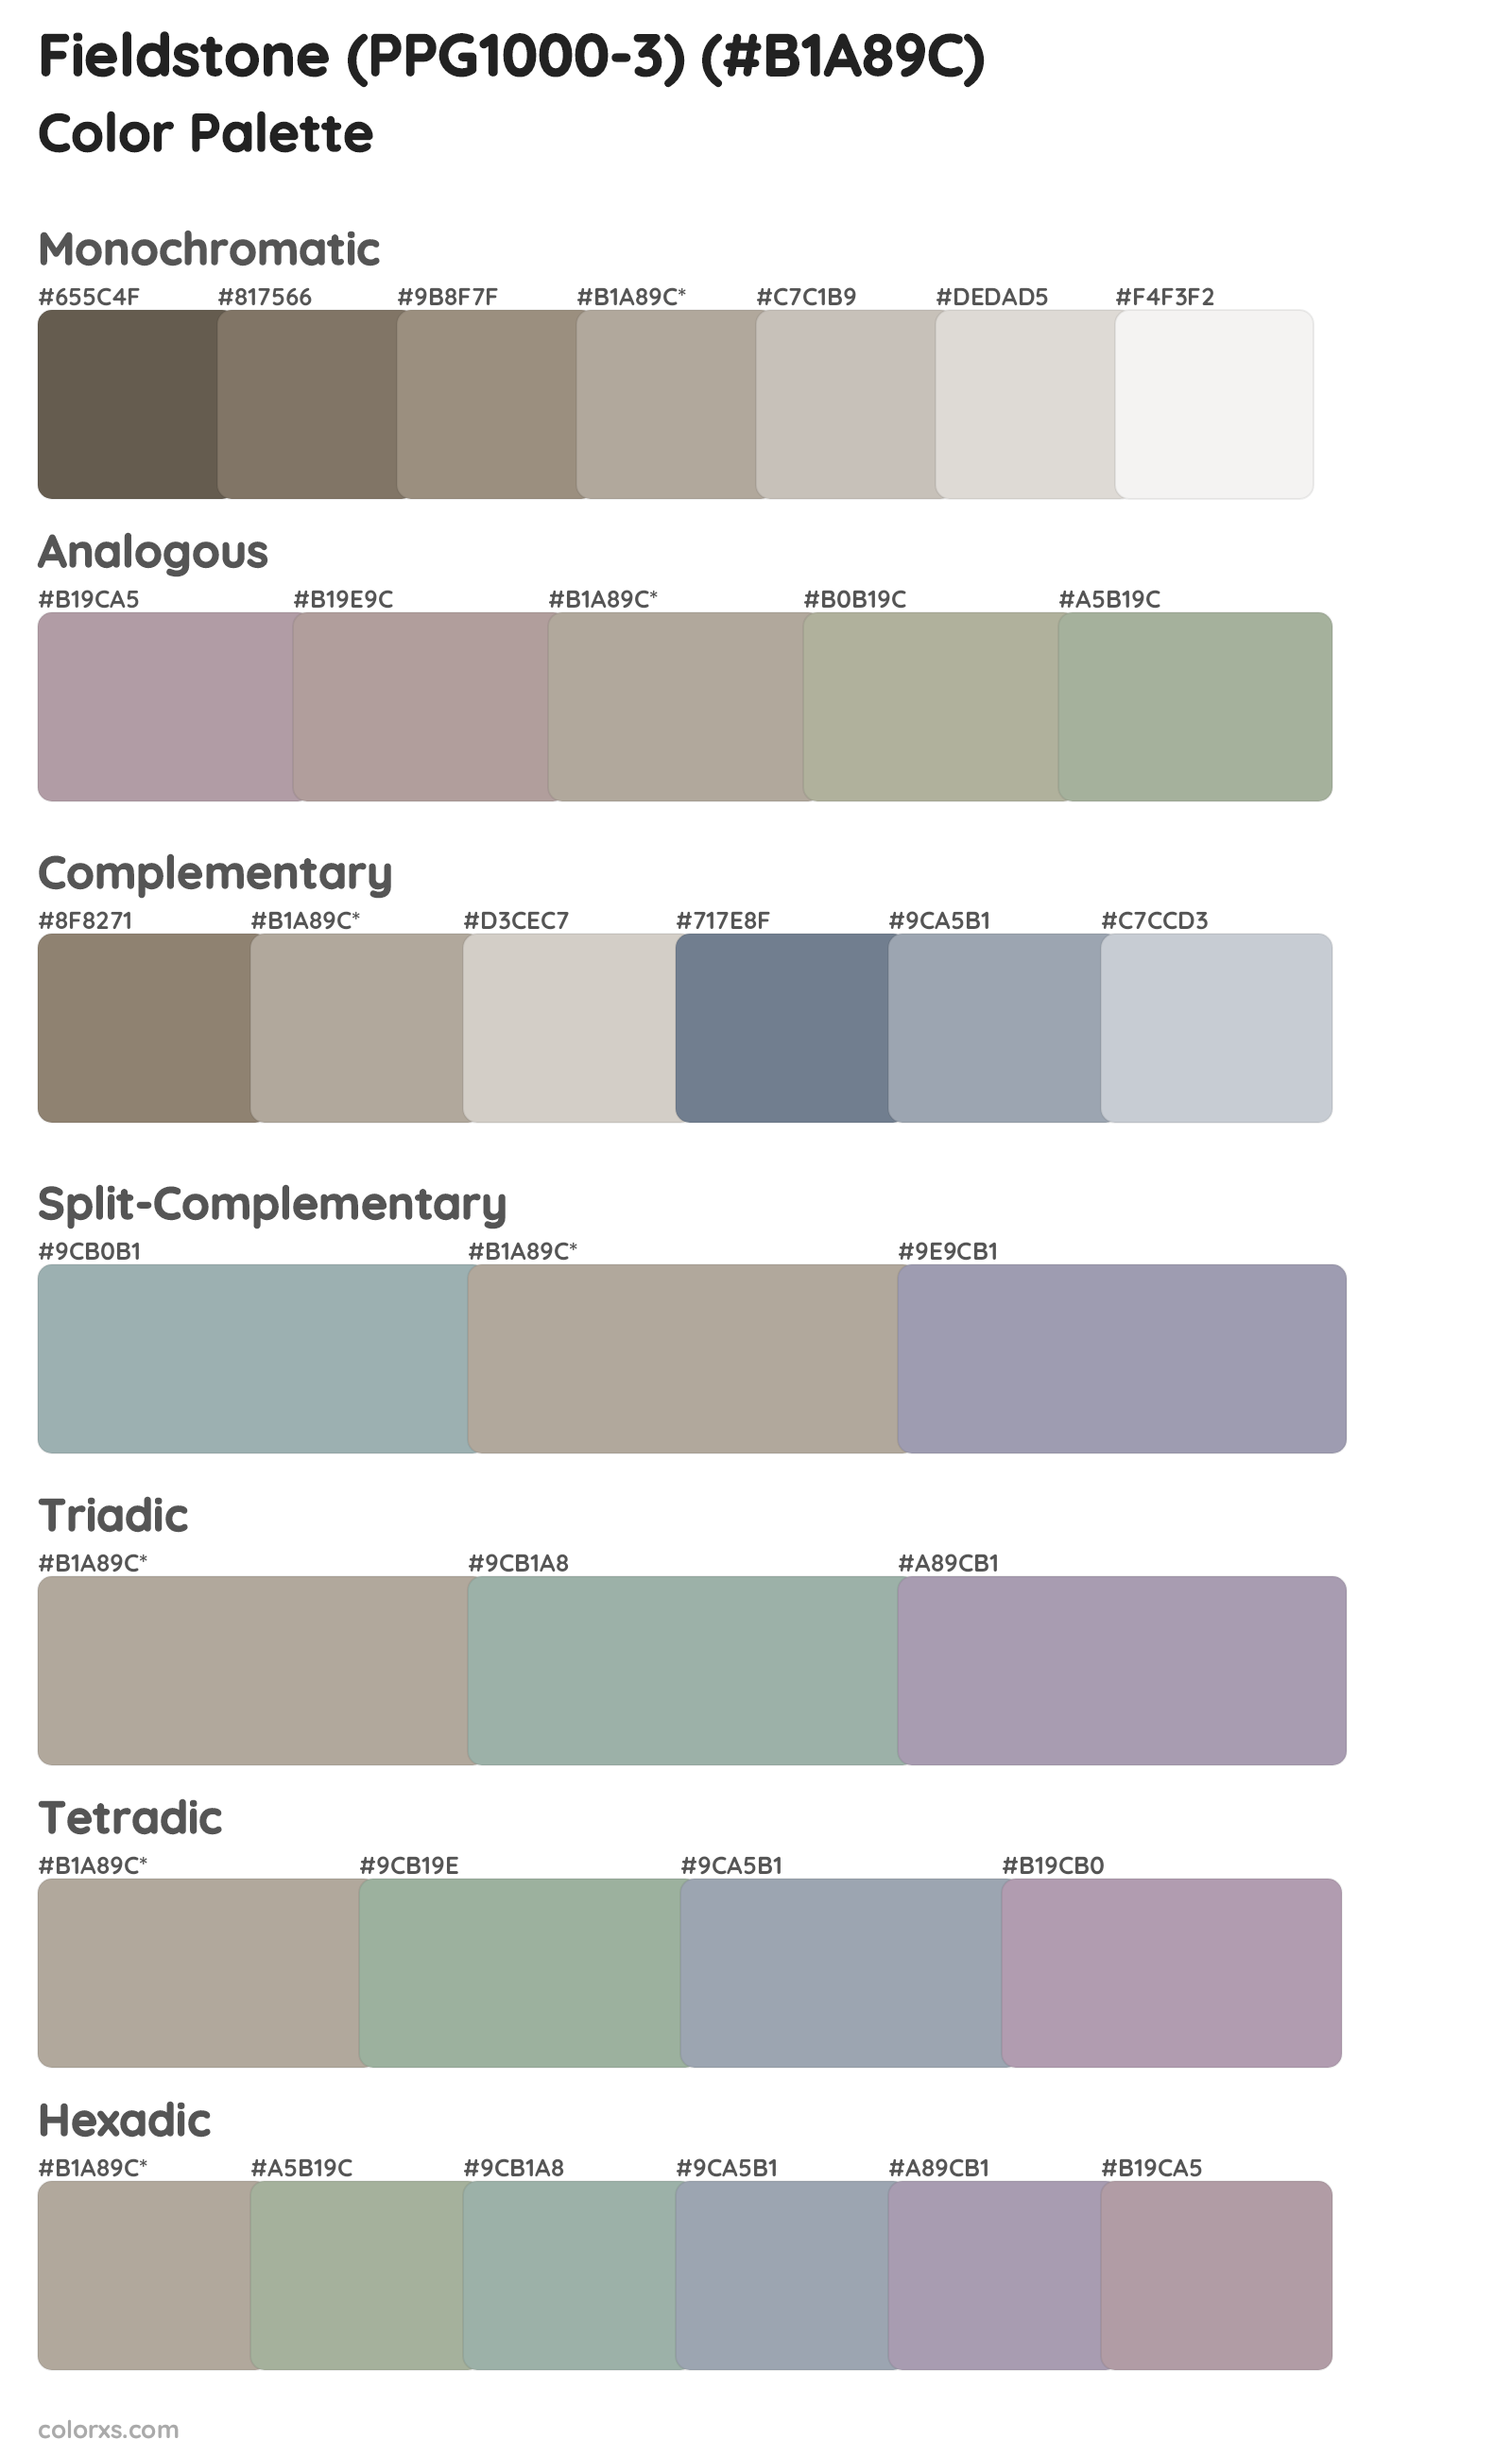 Fieldstone (PPG1000-3) Color Scheme Palettes